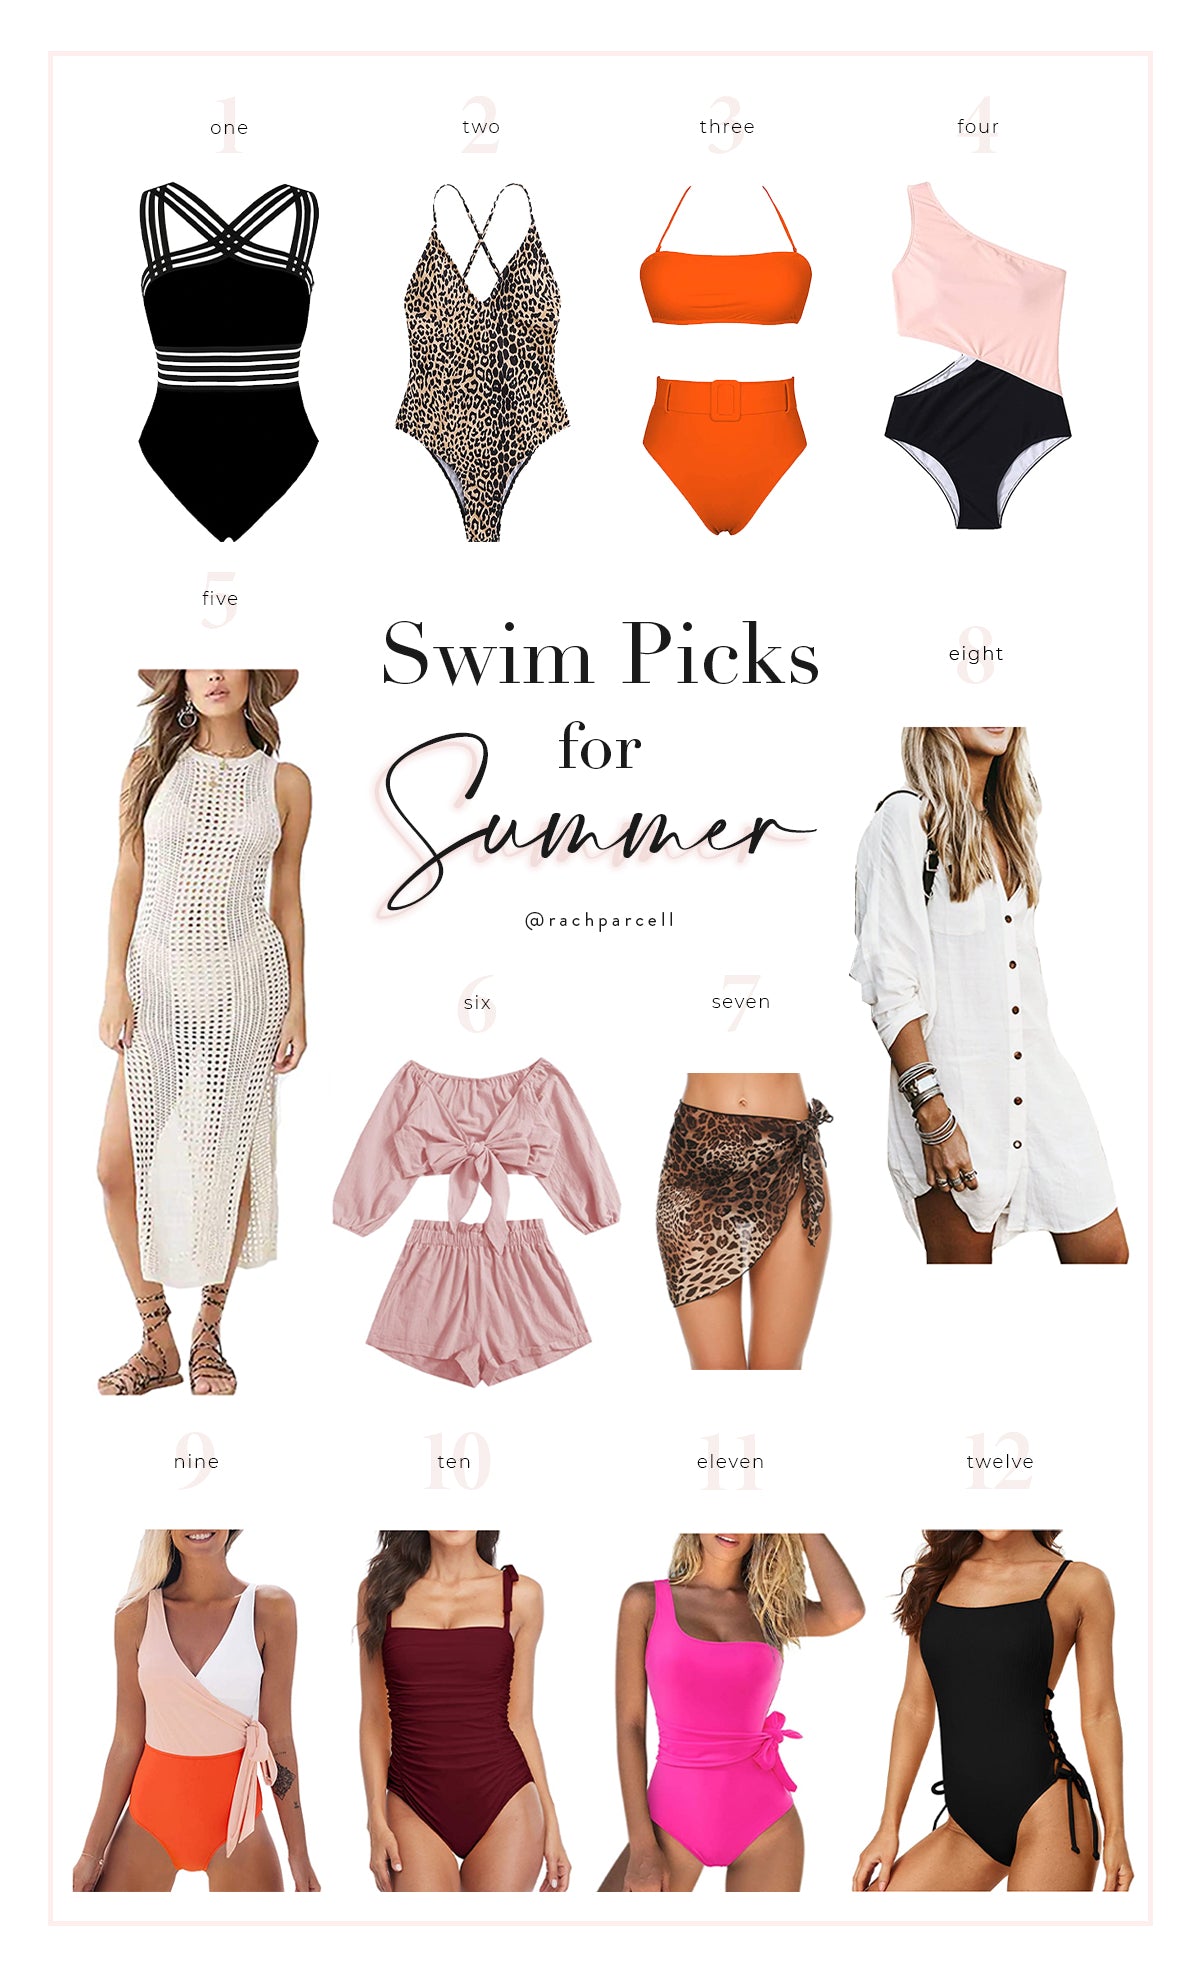 My Swimsuit Picks for Summer... – Rachel Parcell, Inc.